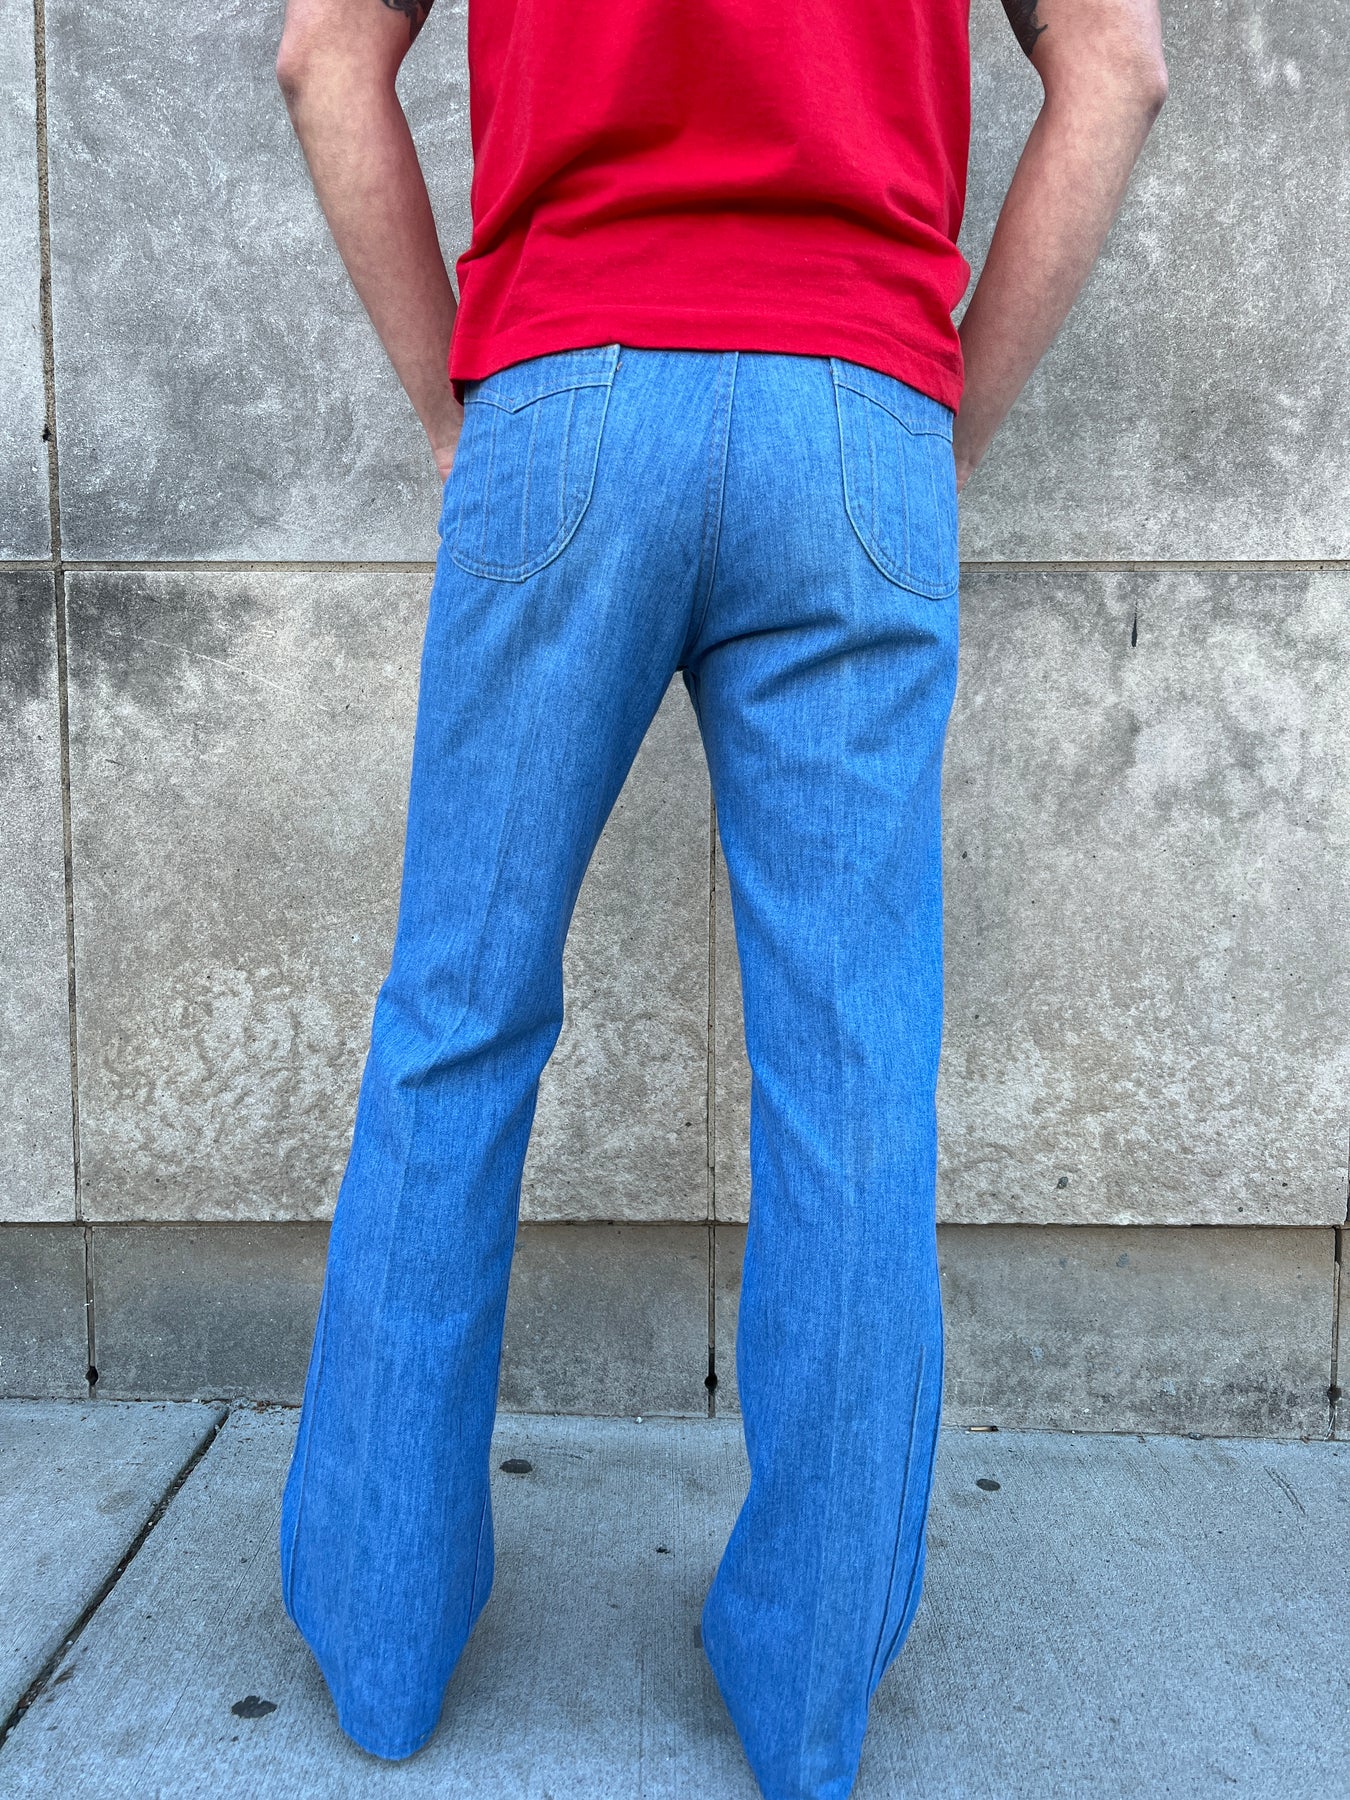 Levi's Vintage Bell Bottom Jeans 1970s Flared Denim -  Denmark